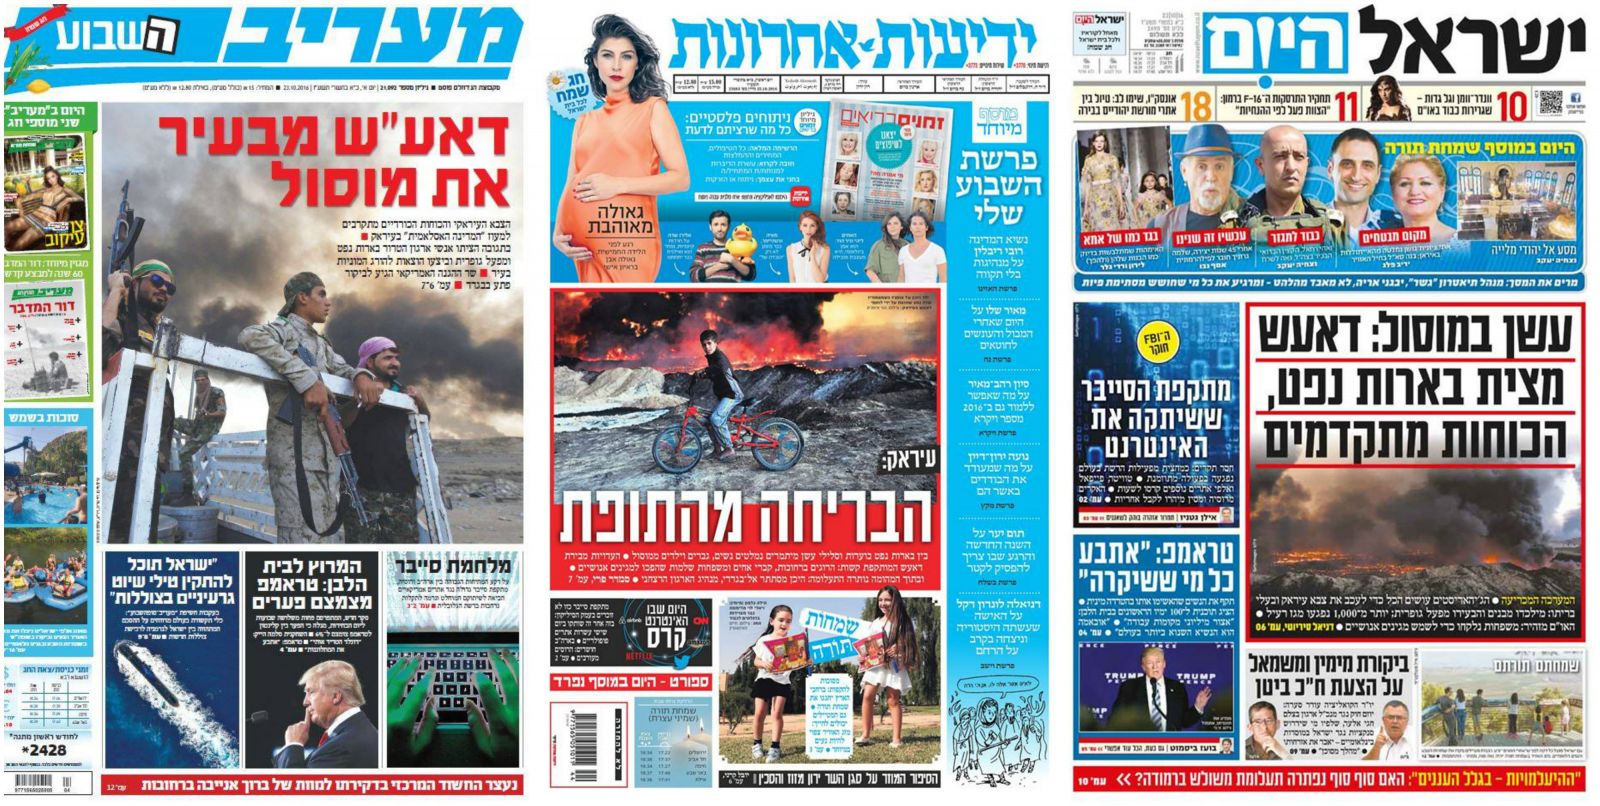 أخبار الموصل على صدر الصفحات الإسرائيلية الأولى (يسرائيل هيوم، يديعوت أحرونوت، معاريف)